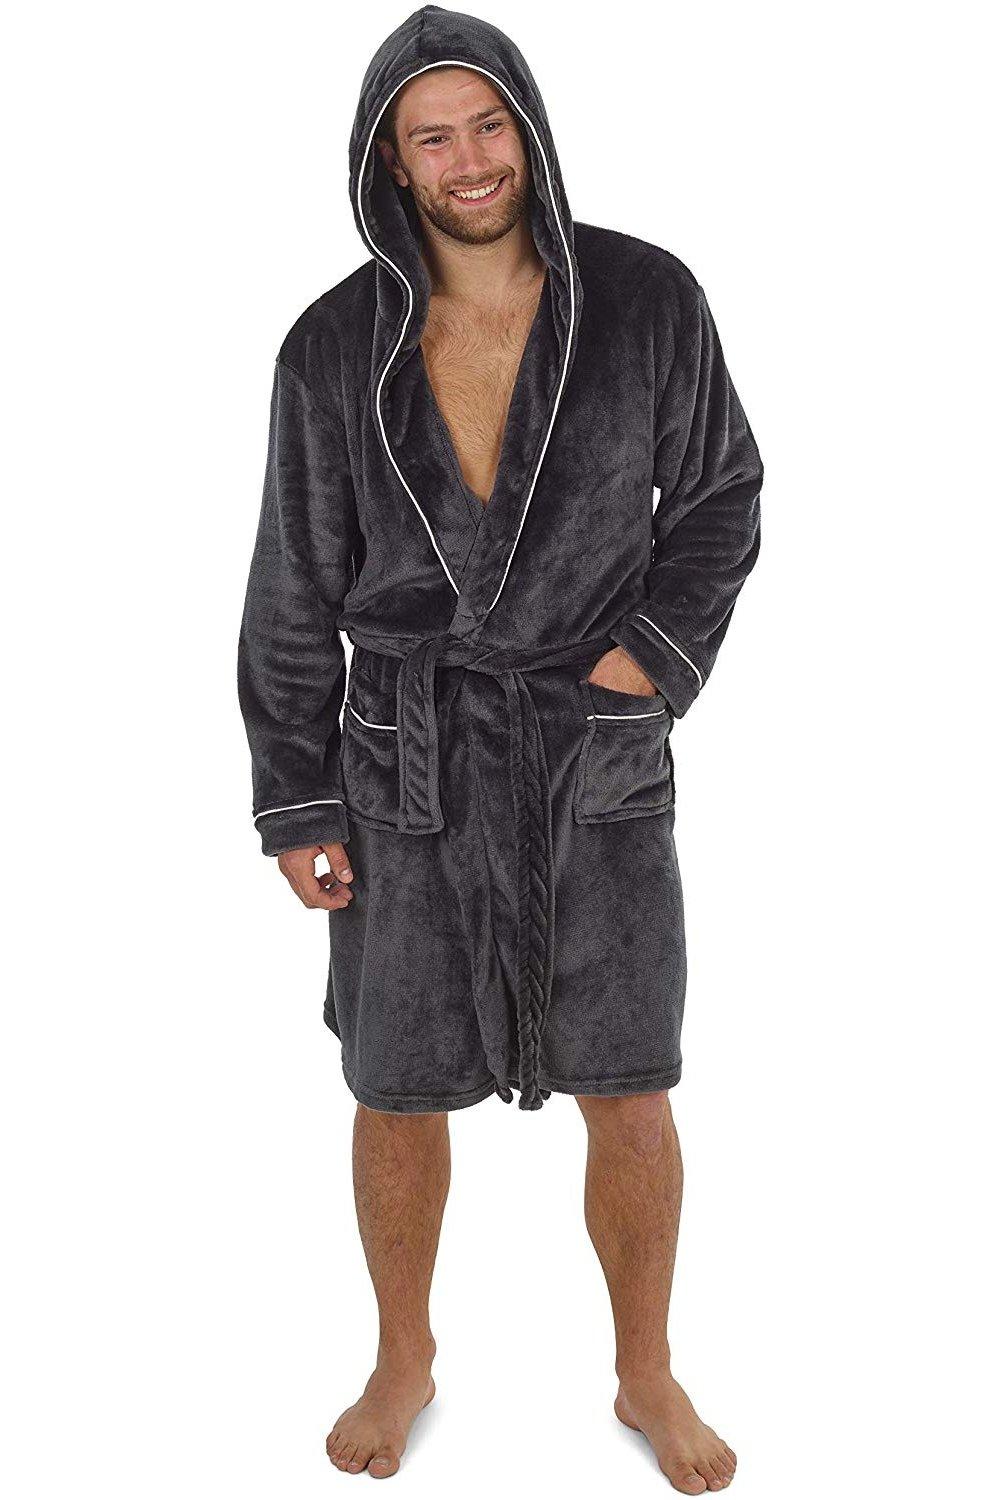 Пышный халат с капюшоном CityComfort, серый мужской халат с капюшоном ночной халат зимний теплый длинный флисовый халат домашняя одежда с поясом